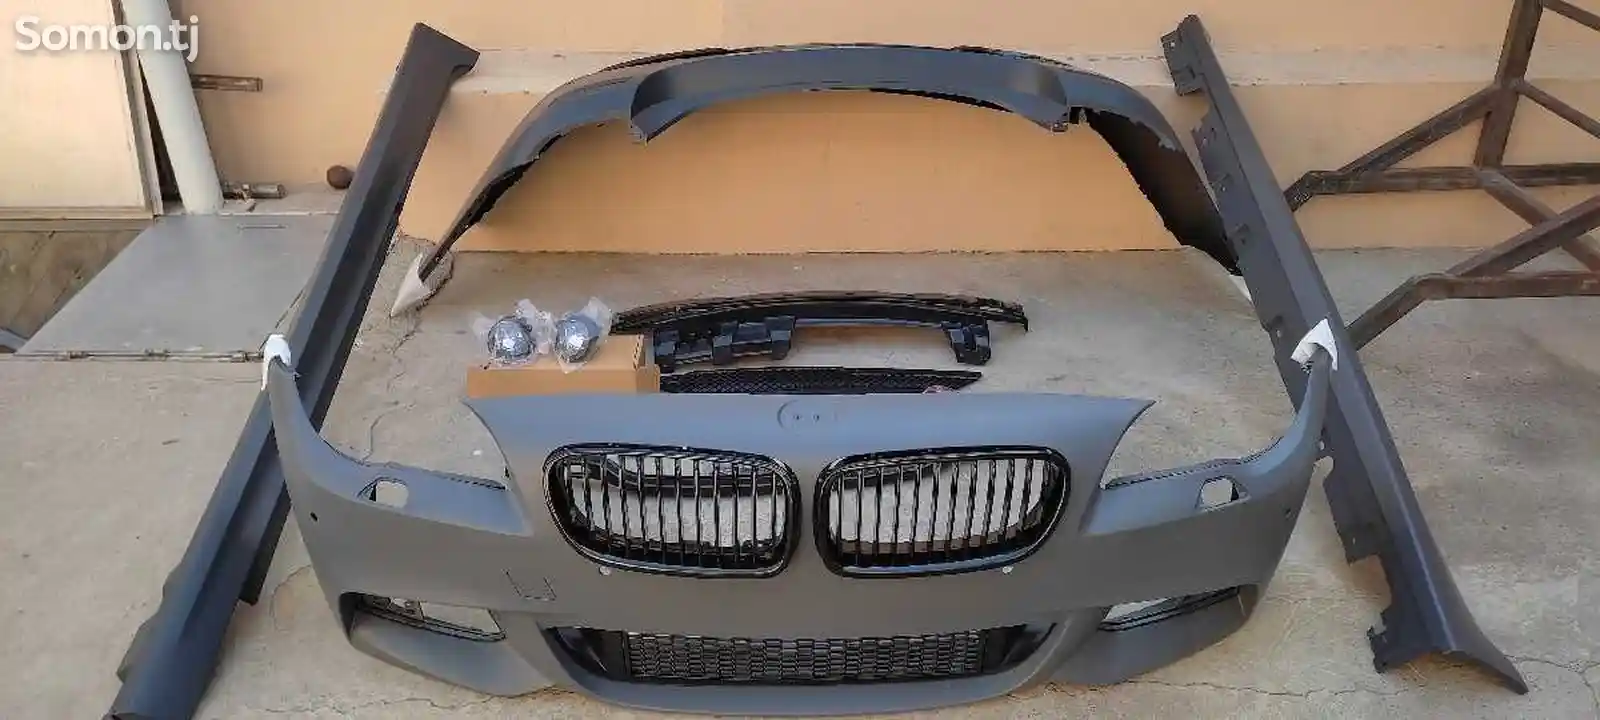 Обвес для BMW F10 на заказ-1